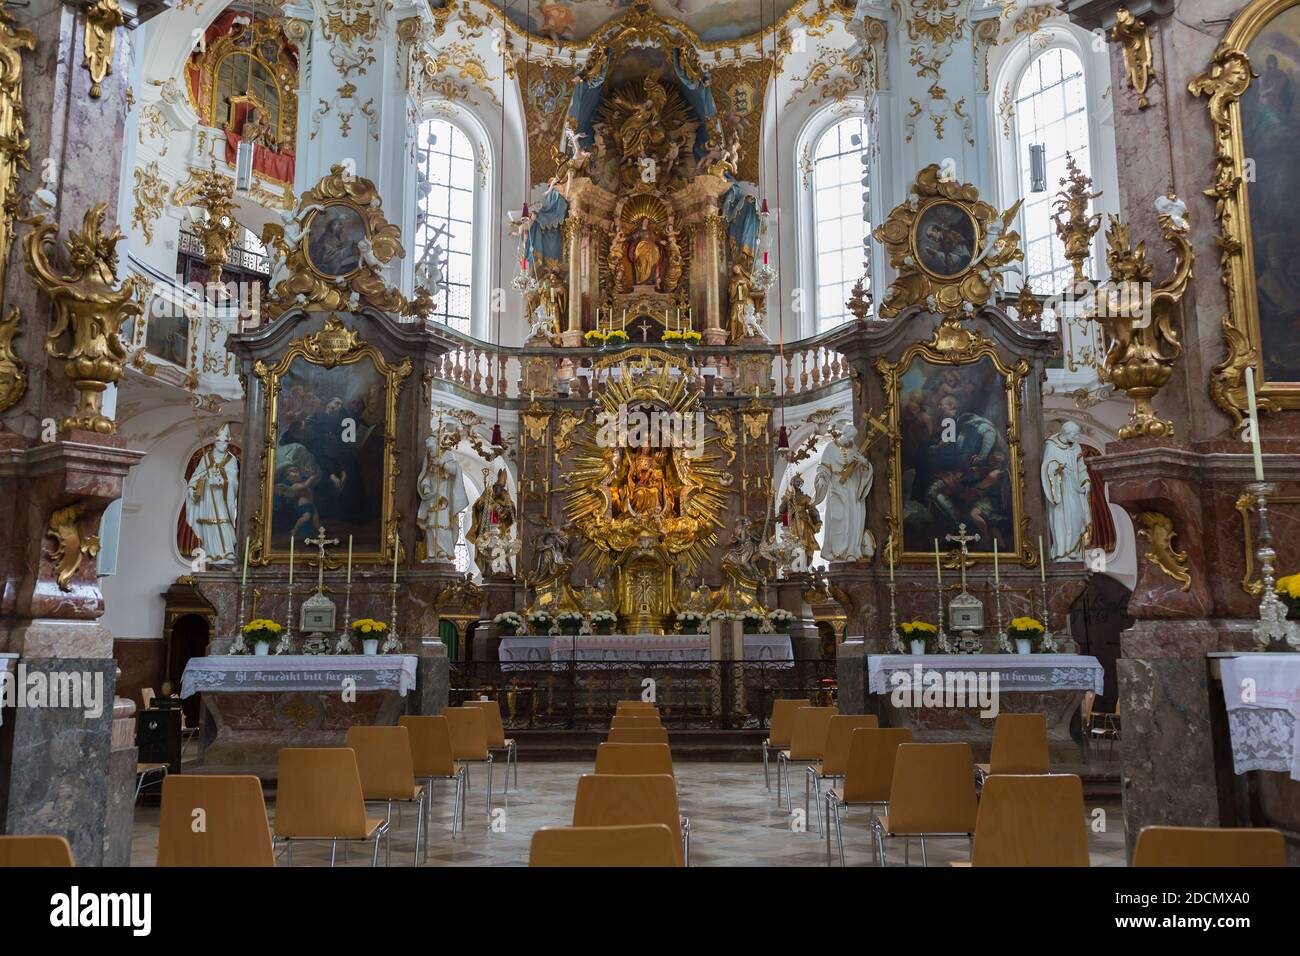 Andechs, Bayern / Deutschland - 2. Nov 2020: Innenansicht der Andechs Abteikirche. Die traditionellen Holzbänke wurden durch Stühle ersetzt. Dies ermöglicht c Stockfoto